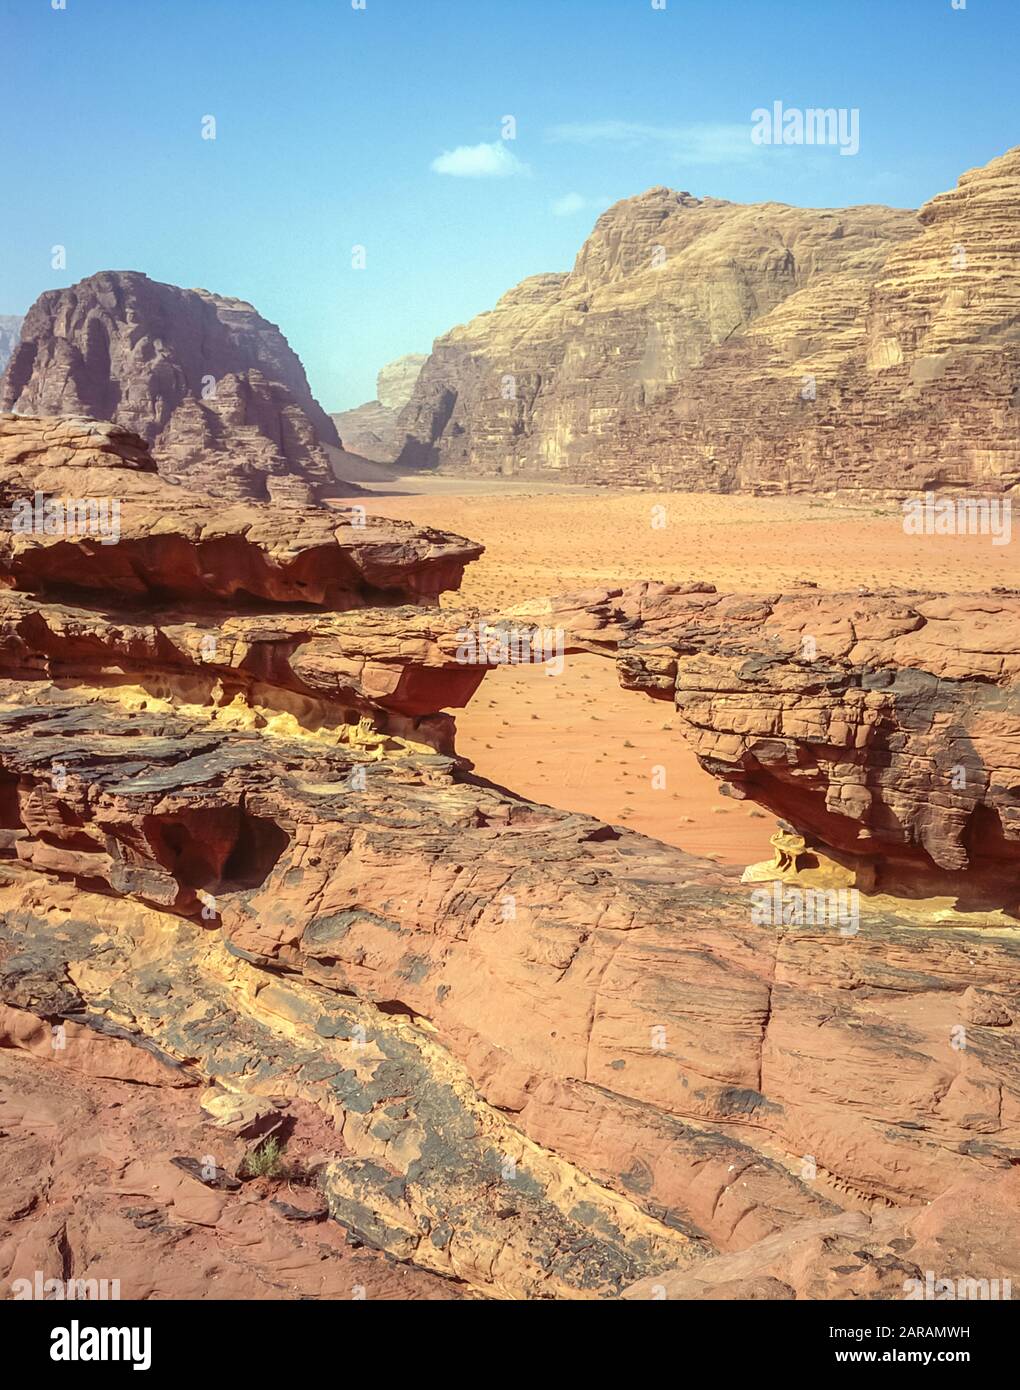 Jordanie. Des paysages de montagne désertiques colorés à l'arche rocheuse d'Al Kharza au site classé au patrimoine mondial de l'UNESCO de Wadi Rum près du port d'Aqaba dans le sud de la Jordanie Banque D'Images